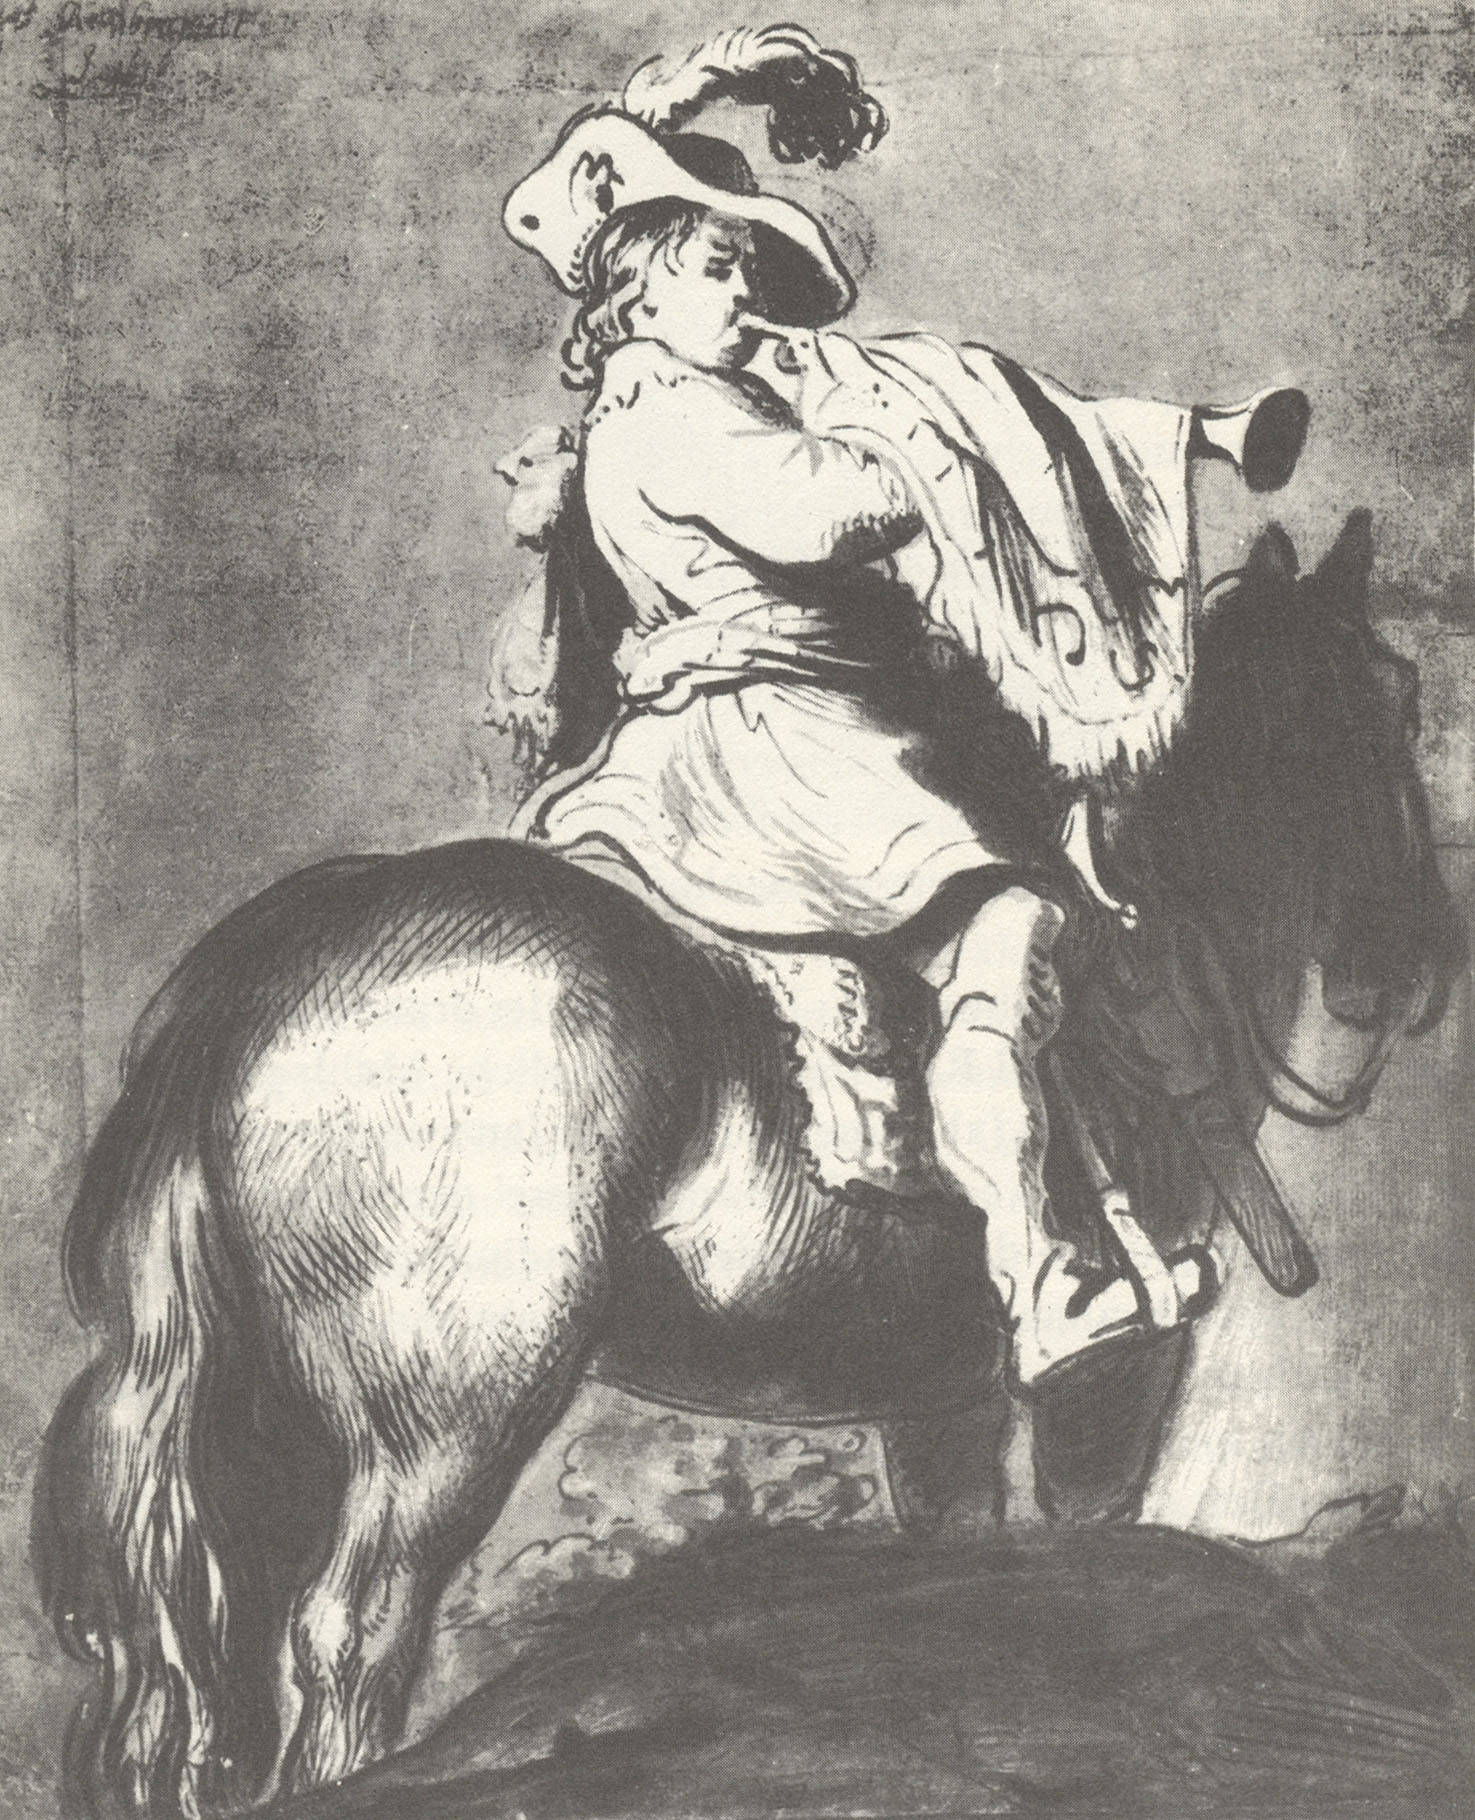 Рембрандт Харменс ван Рейн. "Солдат на лошади". Рейксмузеум, Амстердам.